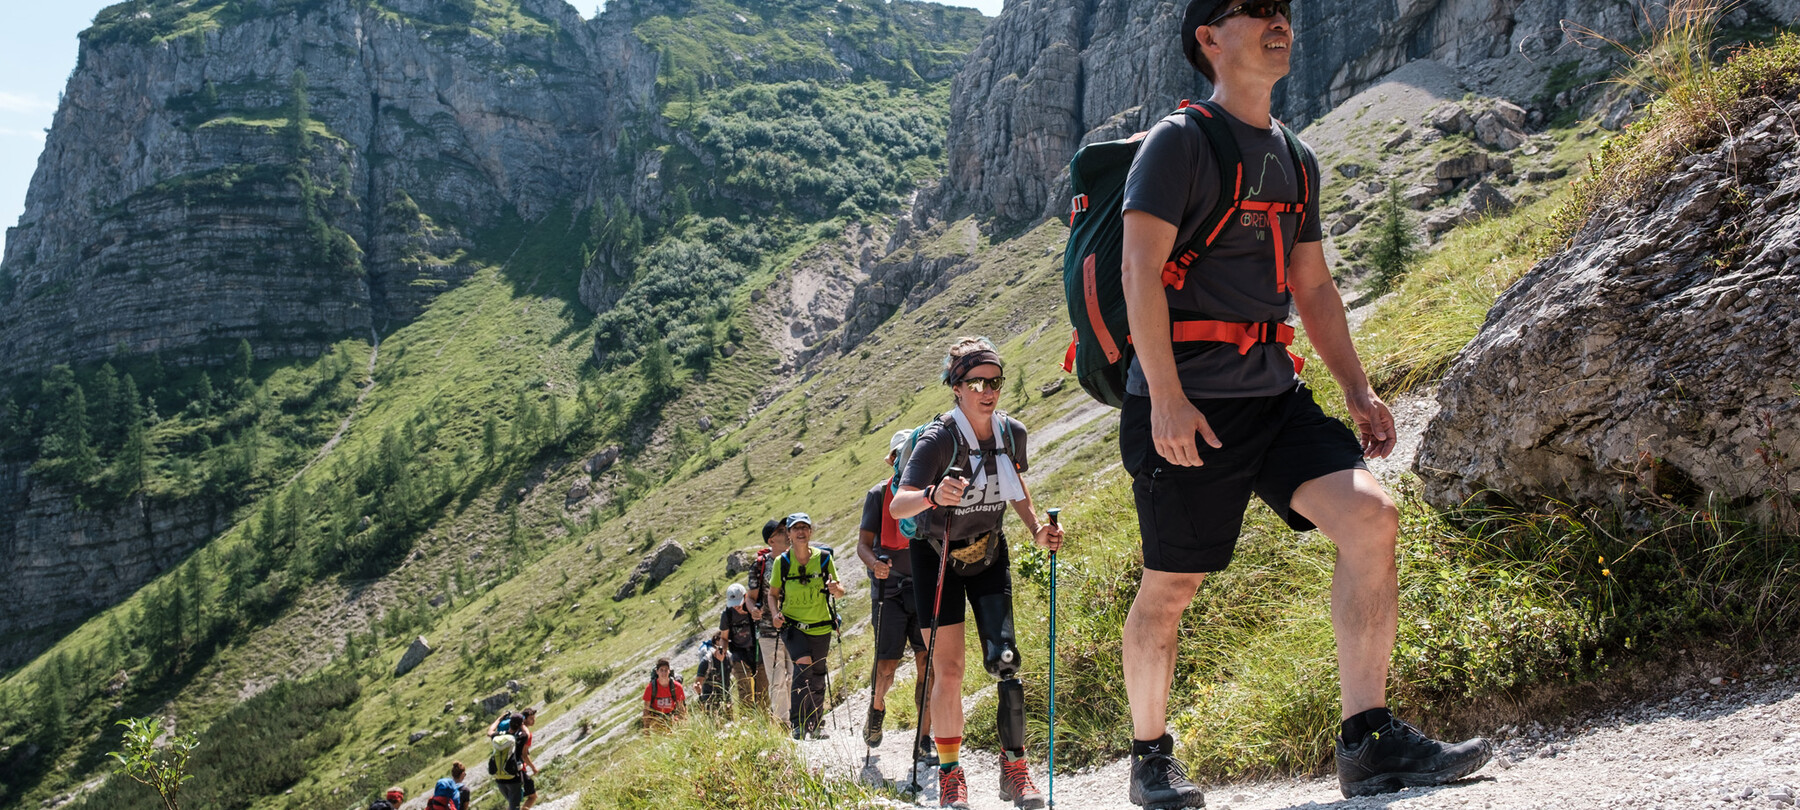 Un gruppo di persone, in fila, sta risalendo un sentiero sulle Dolomiti del Brenta. Seconda nella fila, una donna con una protesi alla gamba sinistra cammina con due bastoncini da trekking, supporto usato anche da altre persone del gruppo.